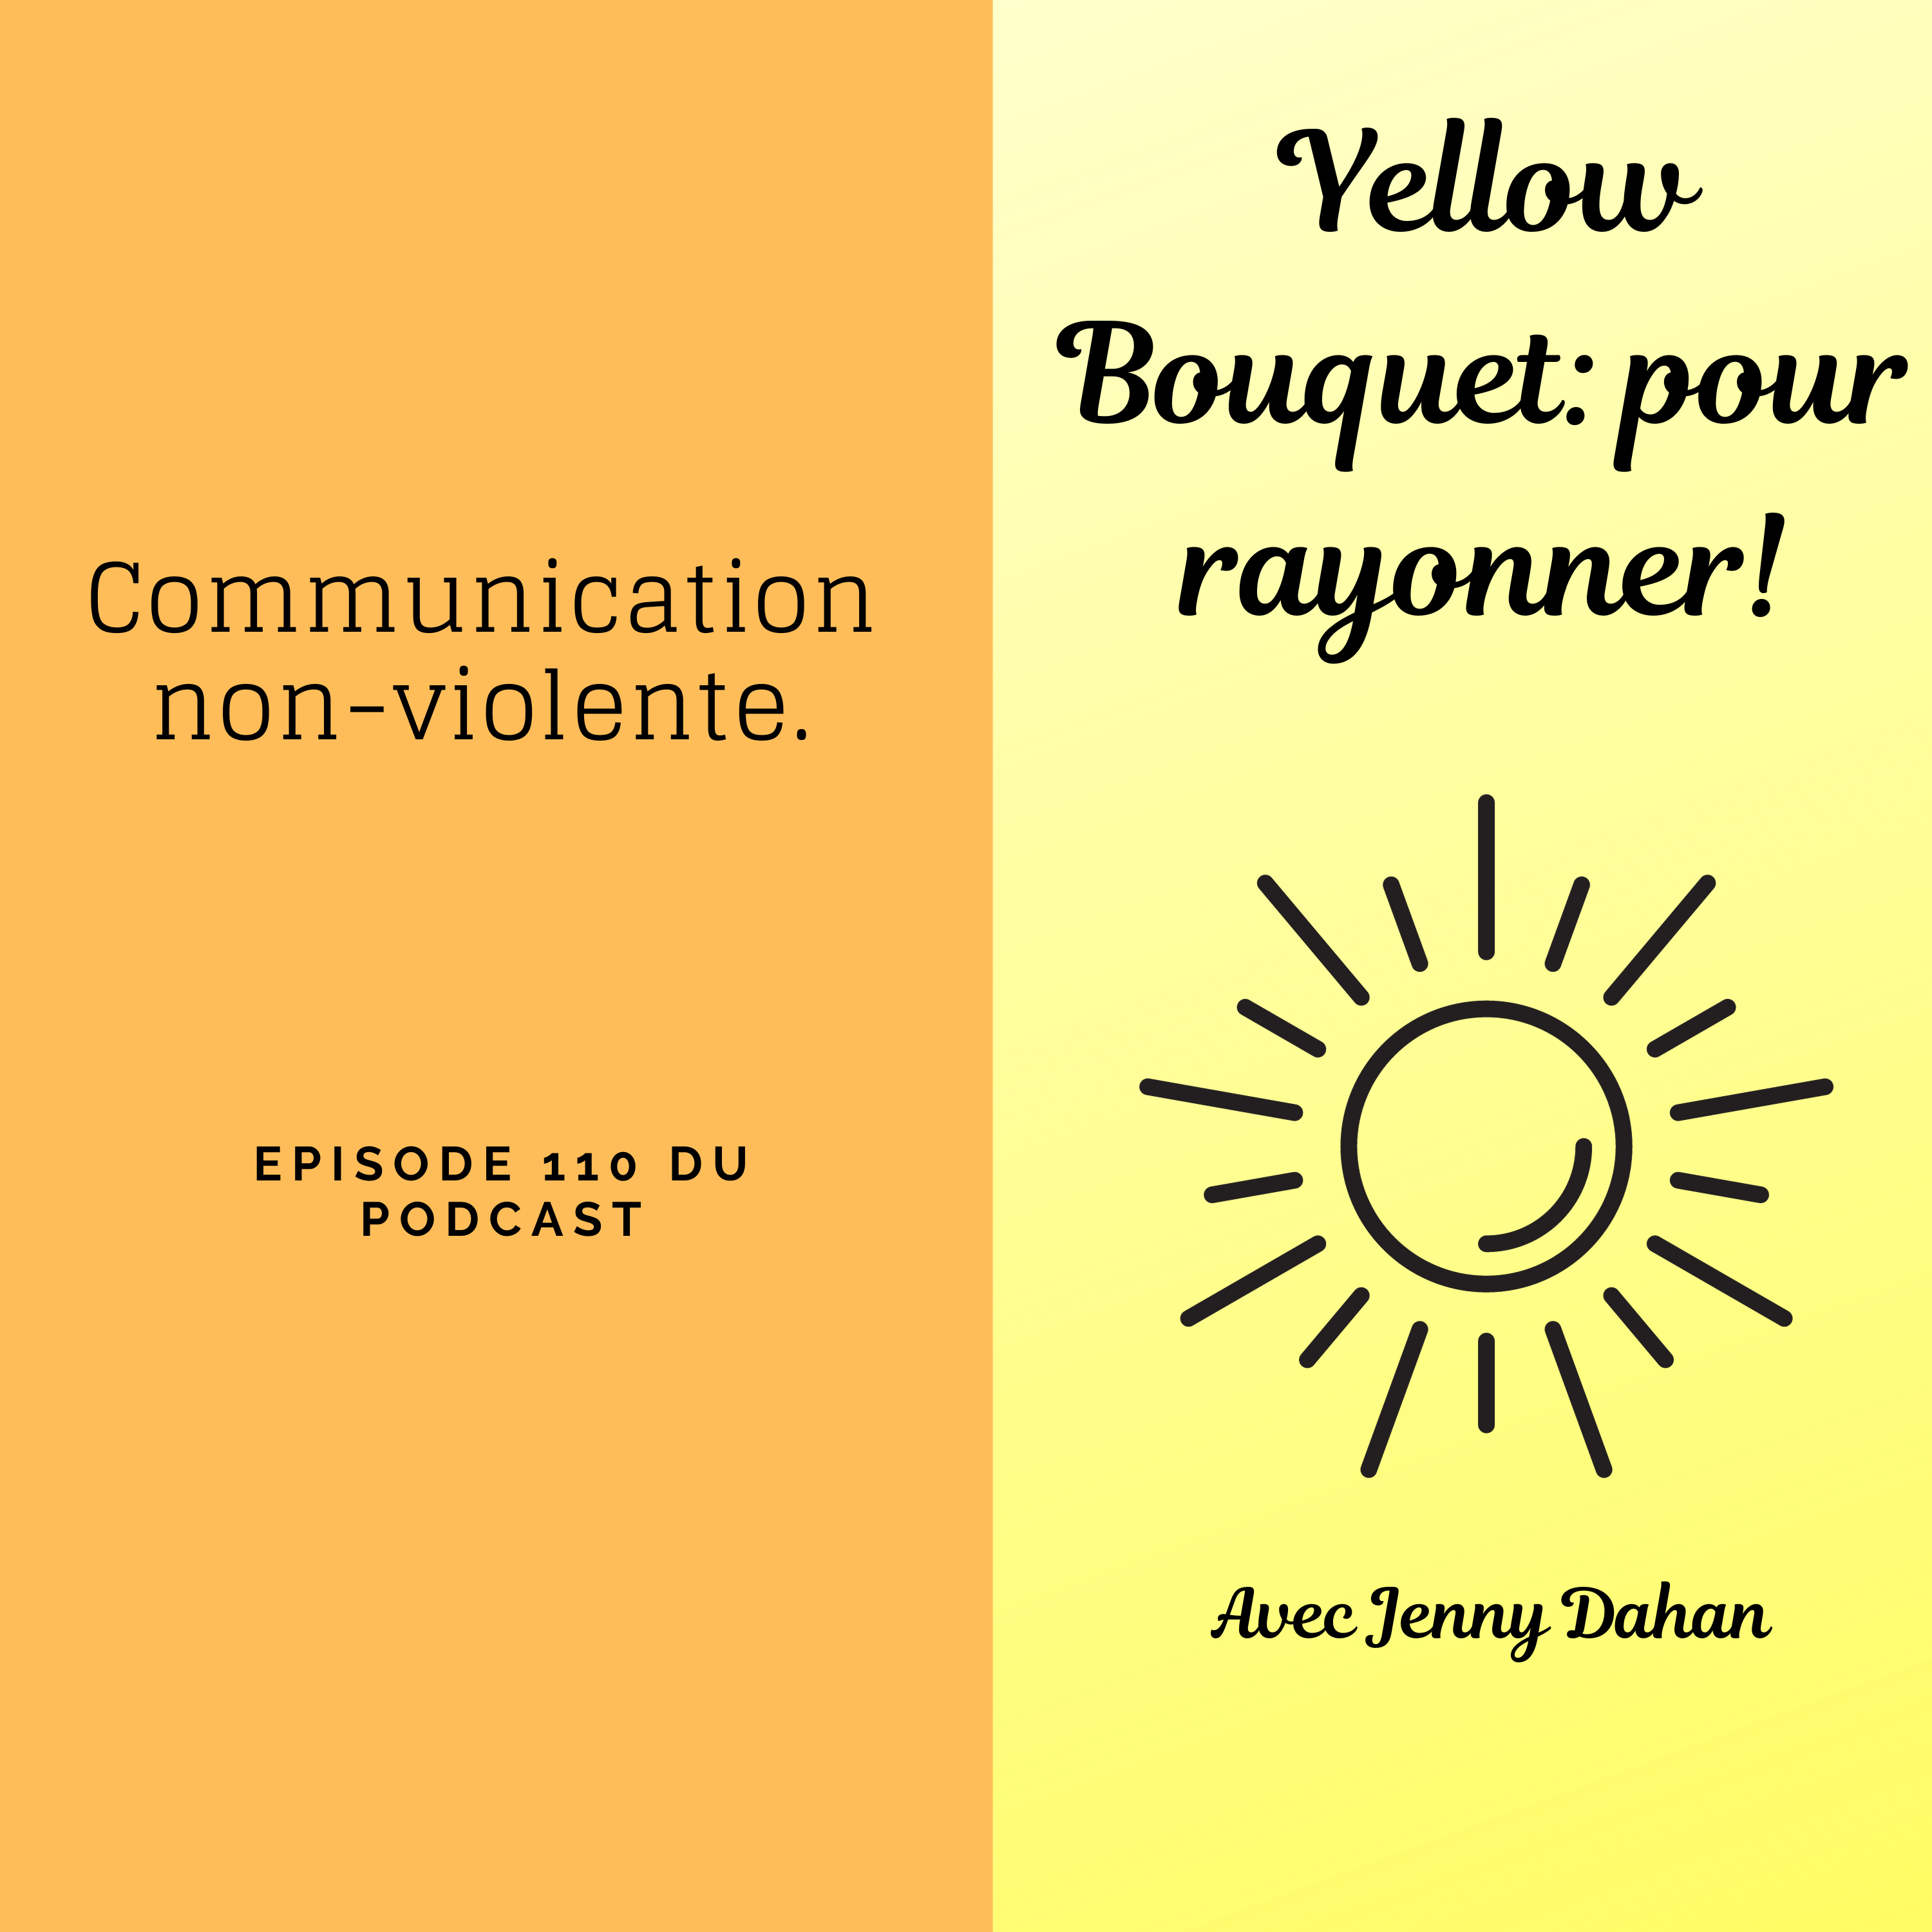 Yellow Bouquet: pour rayonner! épisode 110